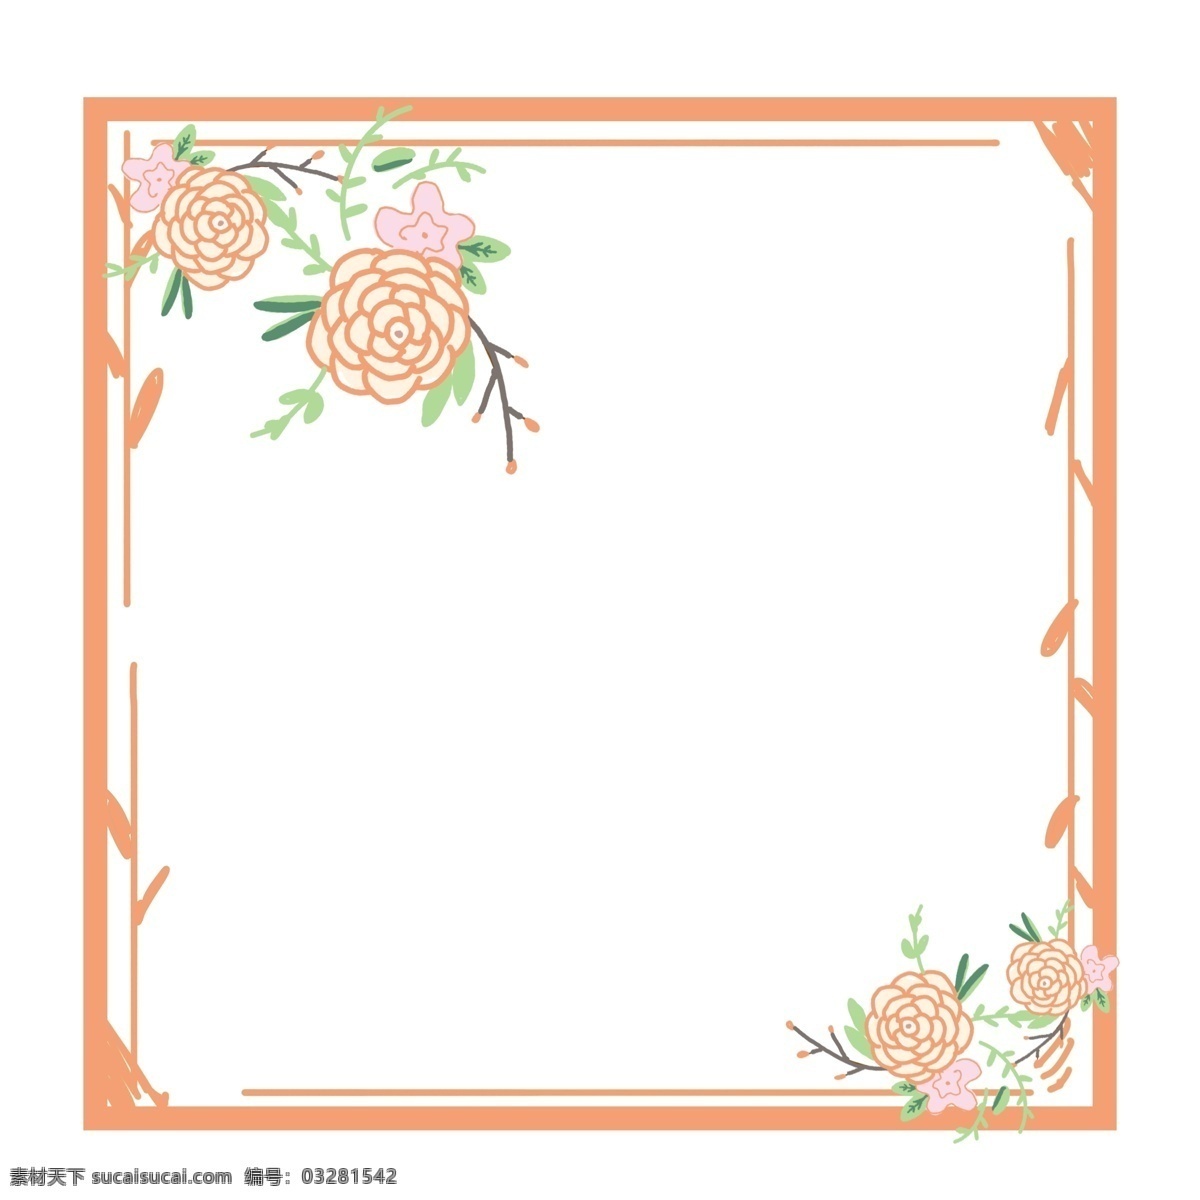 粉色 花朵 边框 小 叶子 花蕊 粉色边框 手绘唯美樱花 花朵组合 繁花似锦